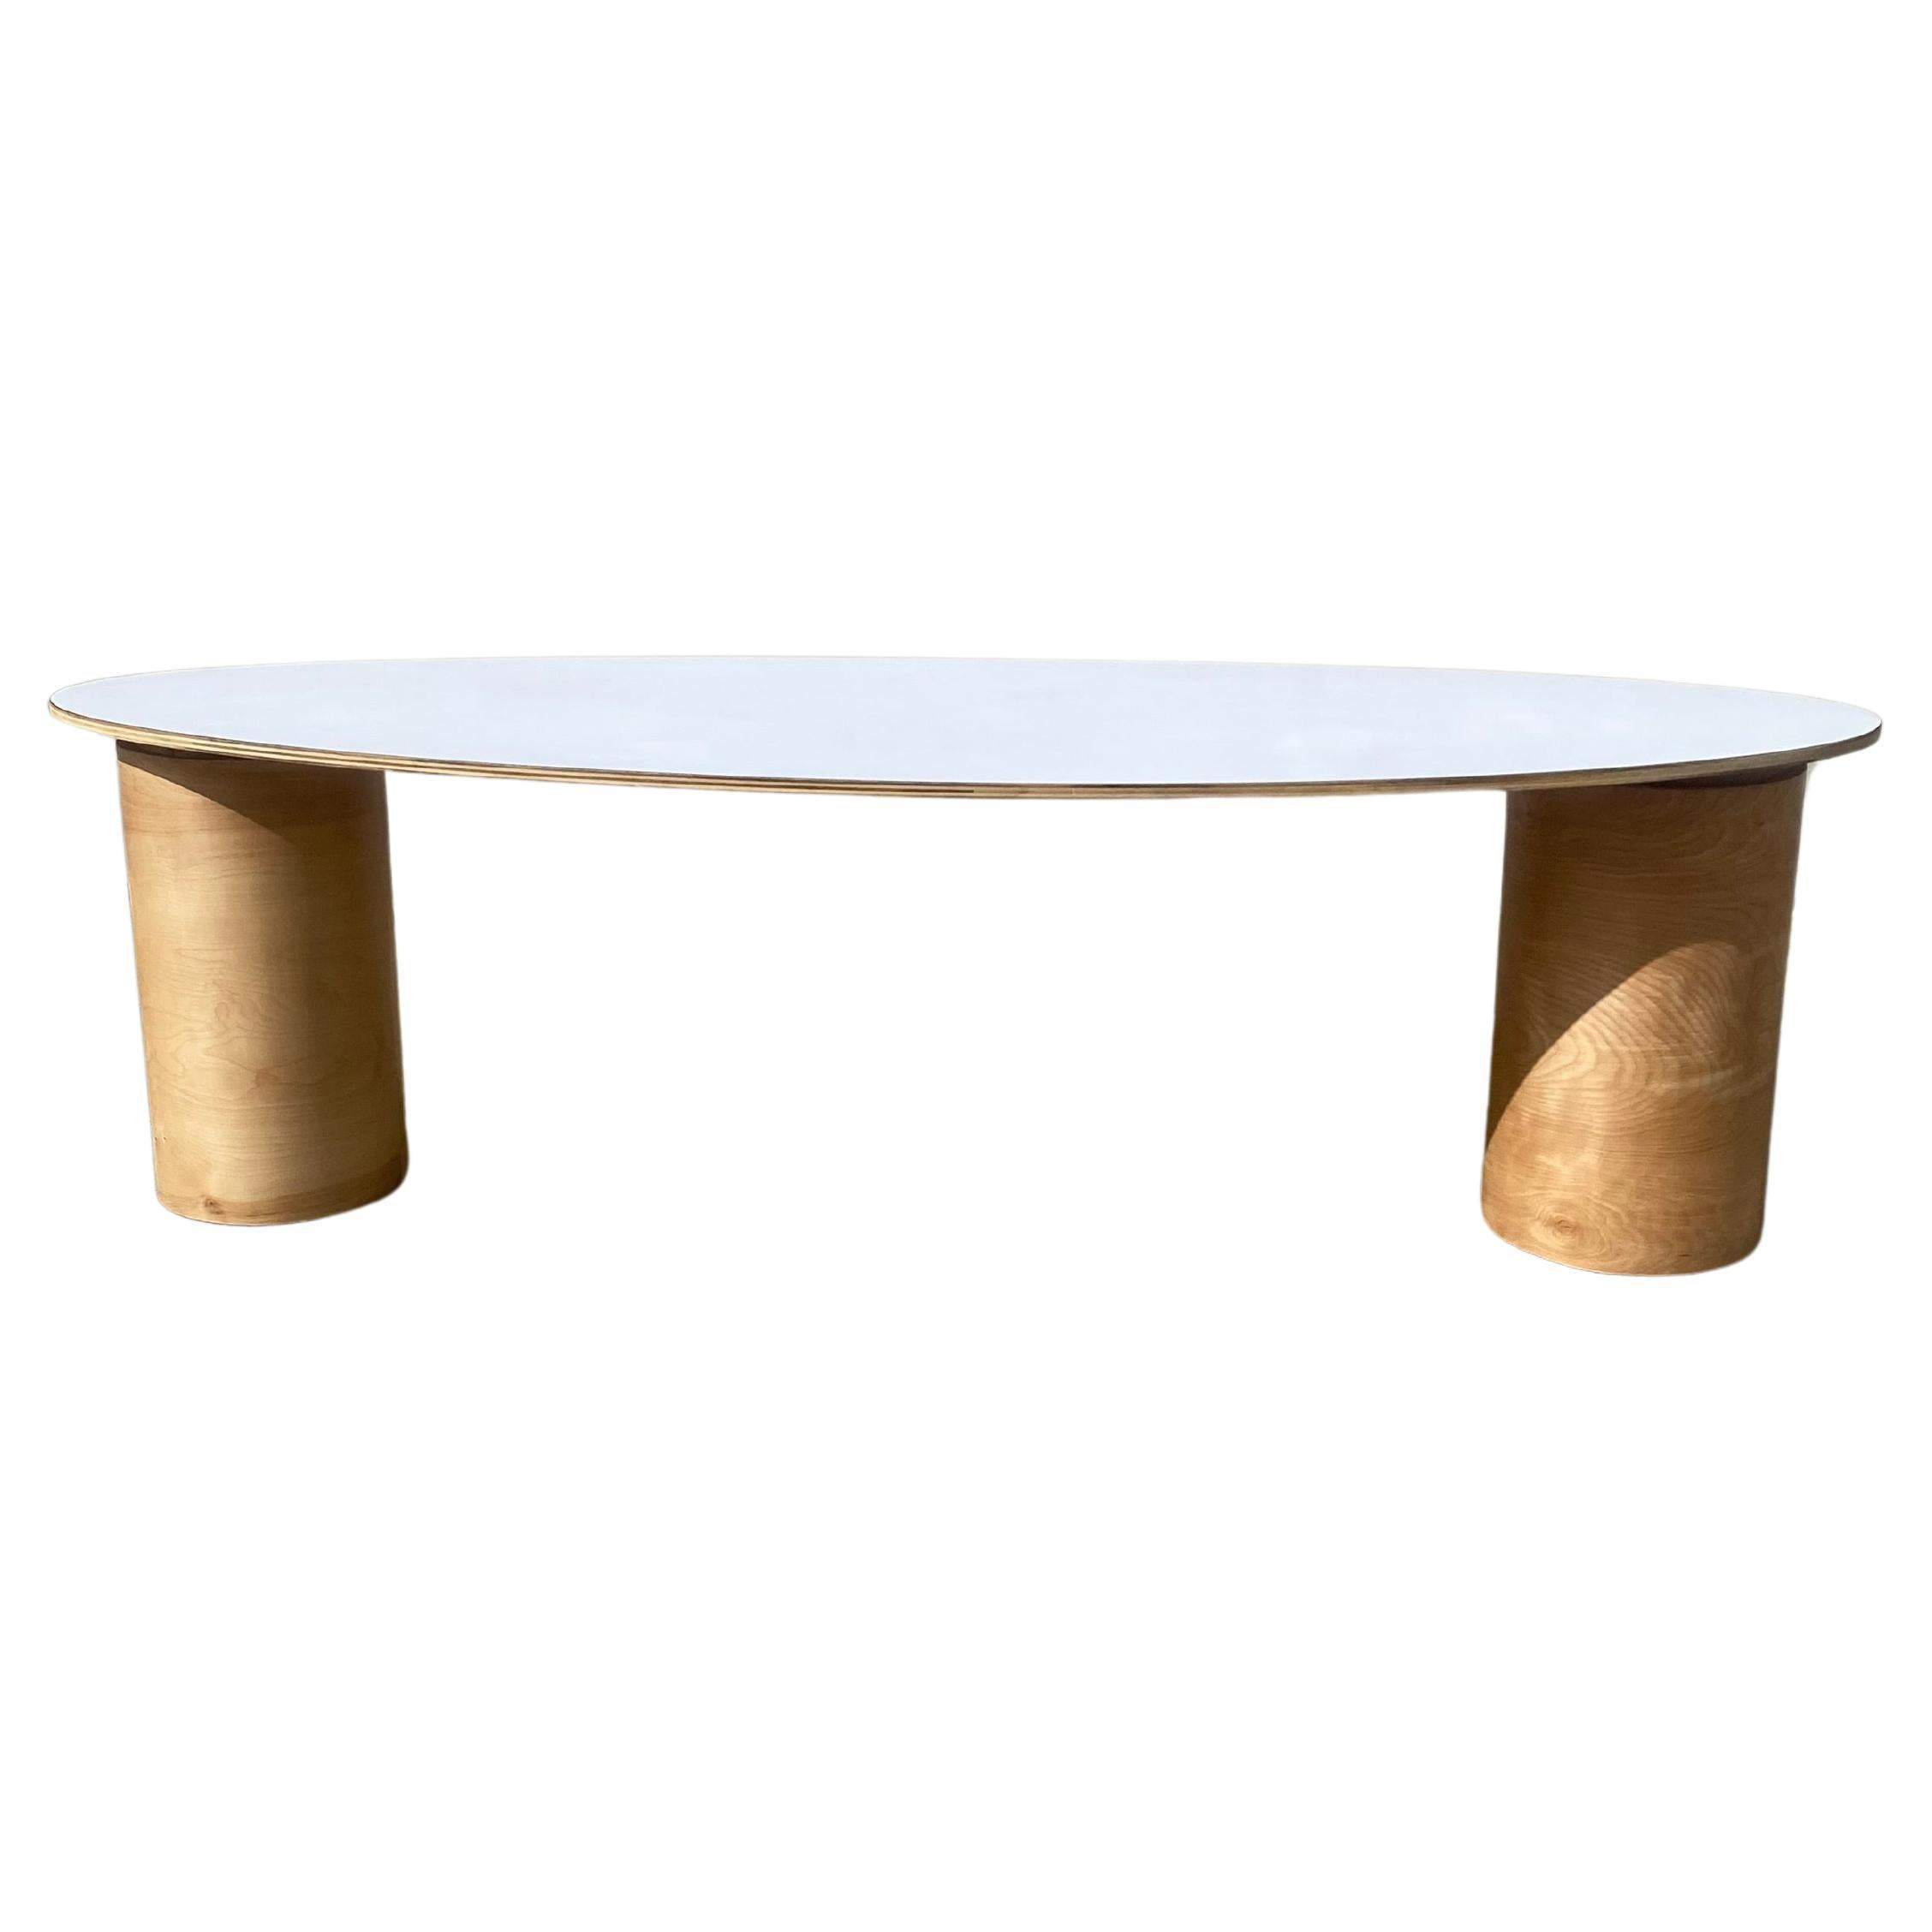 Custom Oval Table For Sale